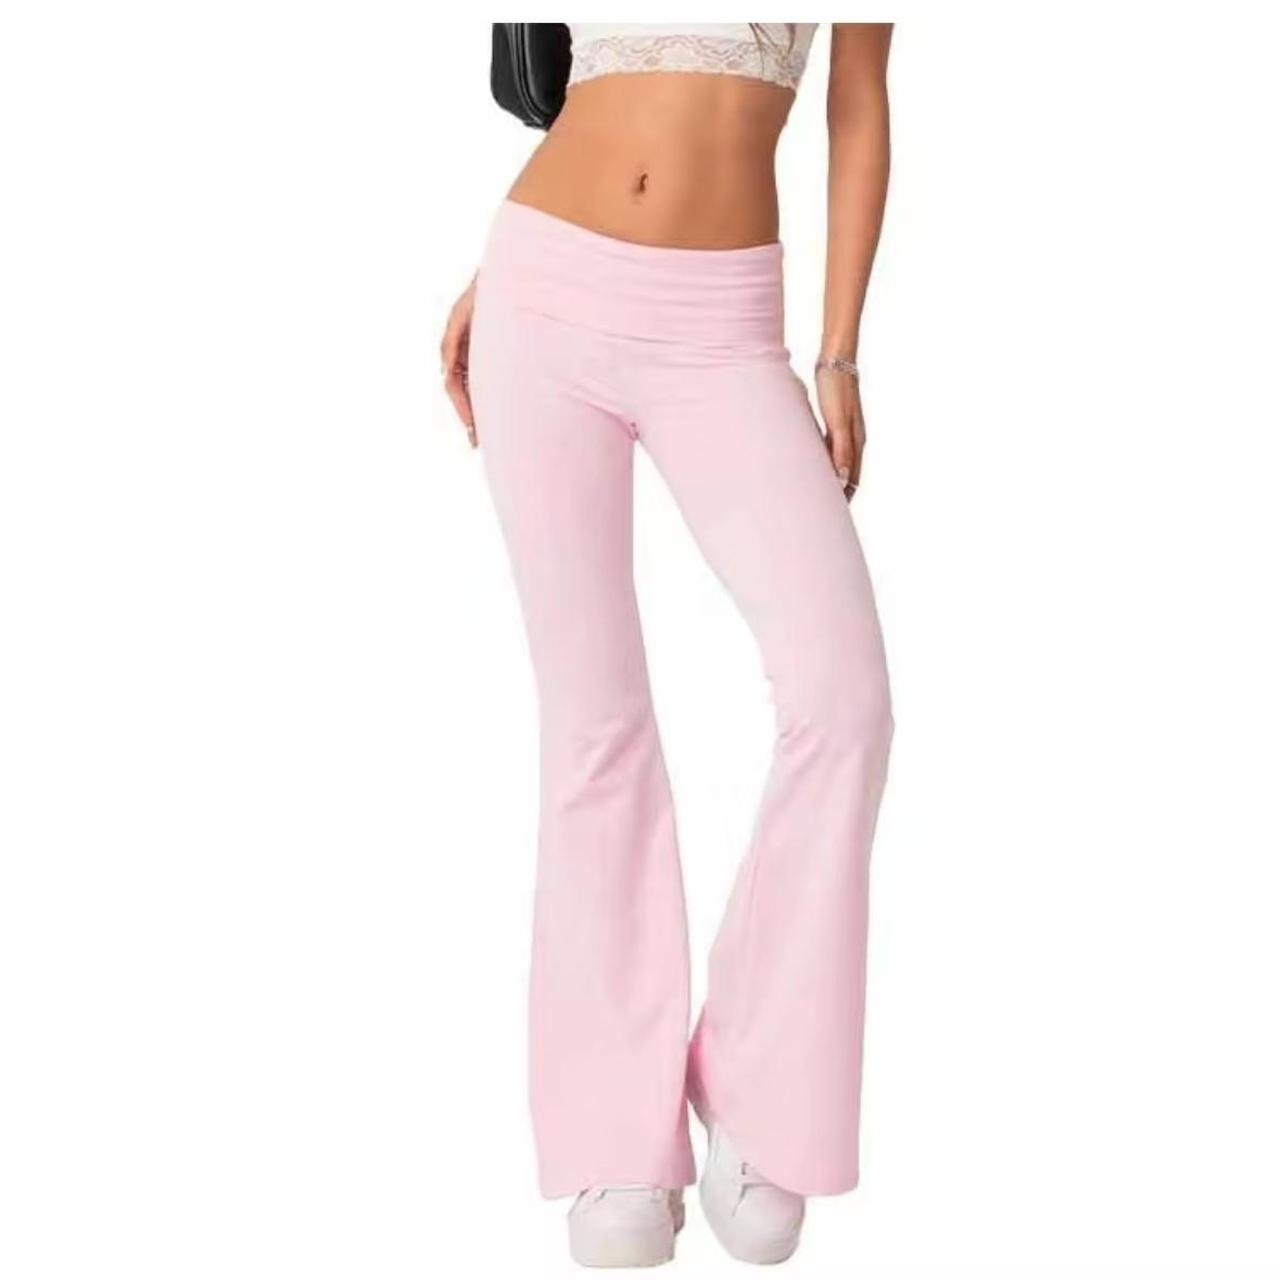 small ZELLA pink leggings #leggings #pinkleggings - Depop